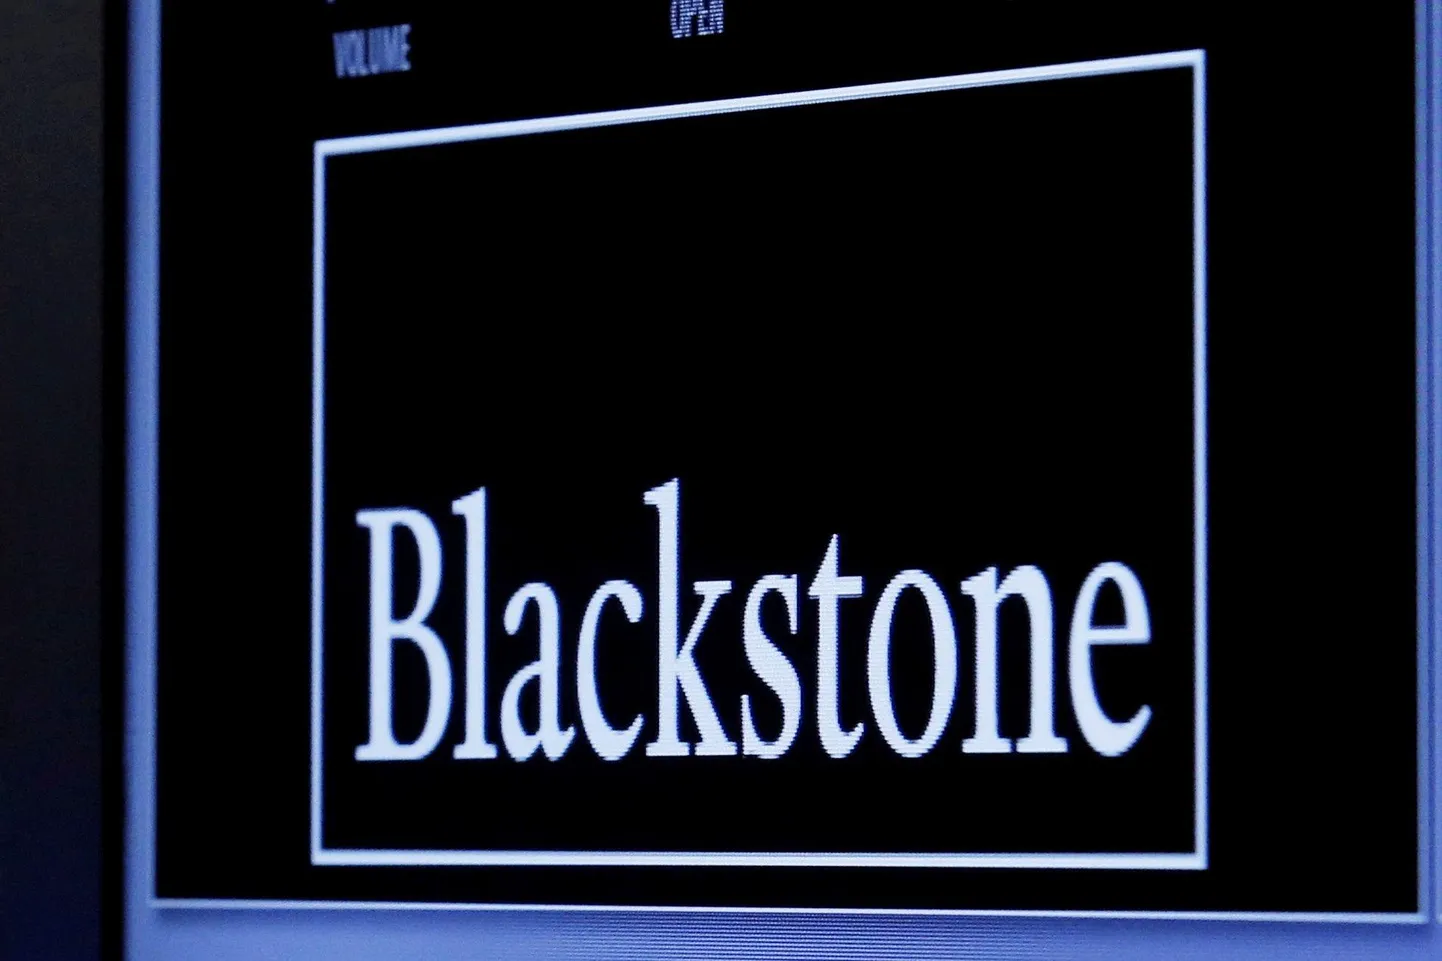 Blackstone’i aktsia aitas Mari portfelli taas plussi kerkida.